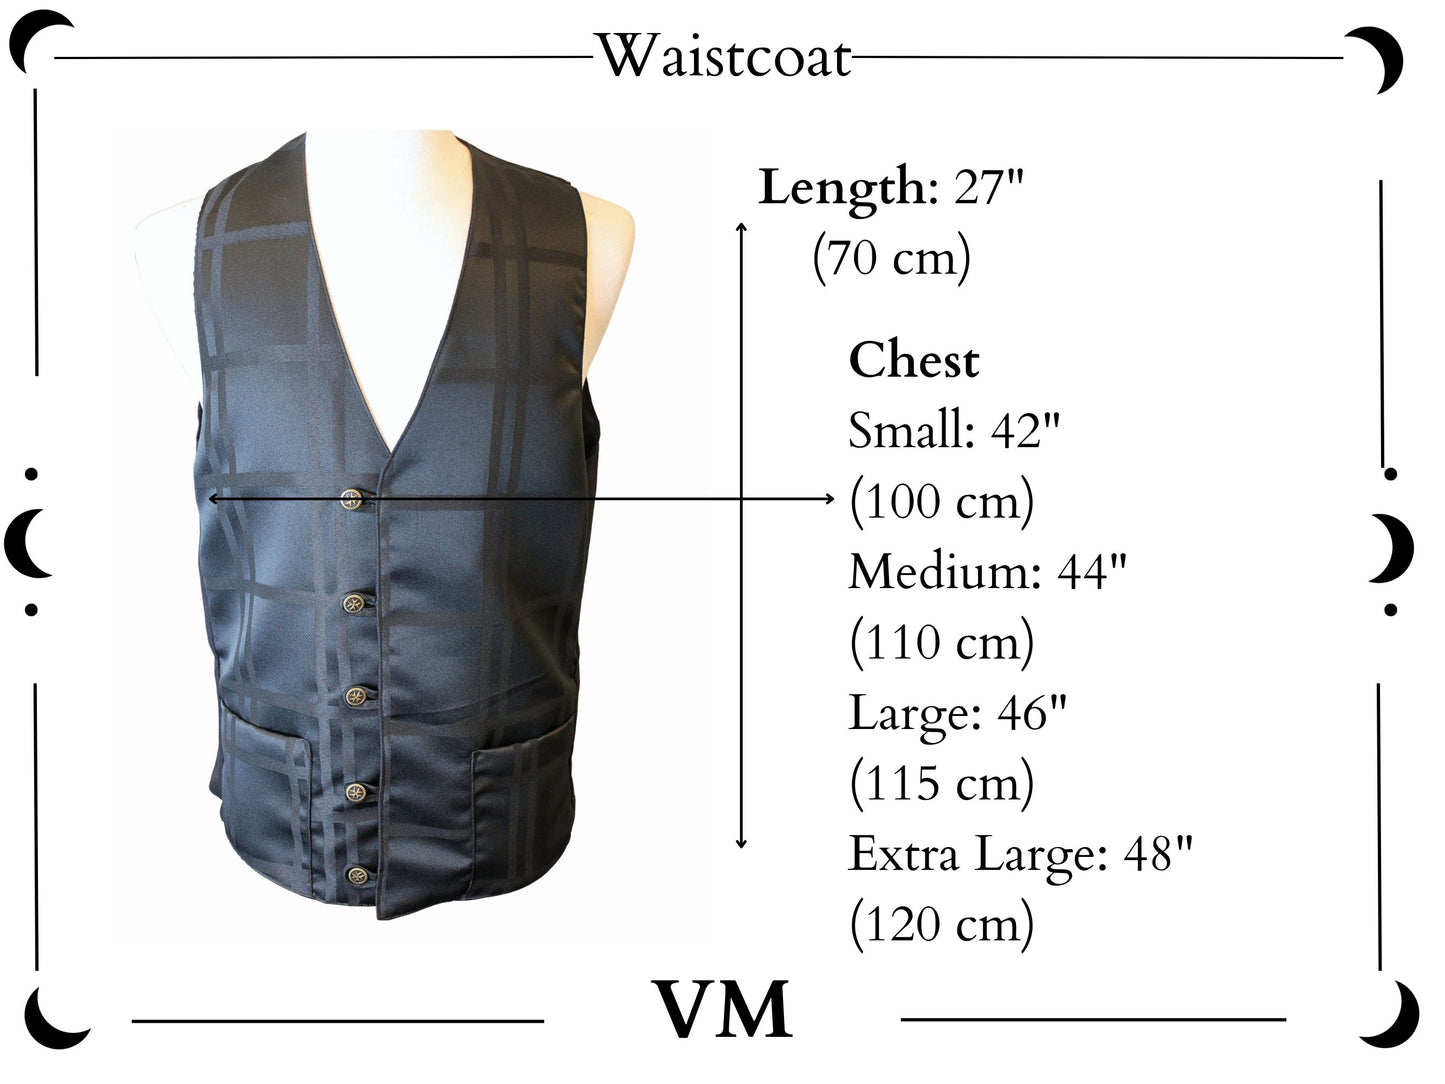 The VM Waistcoat